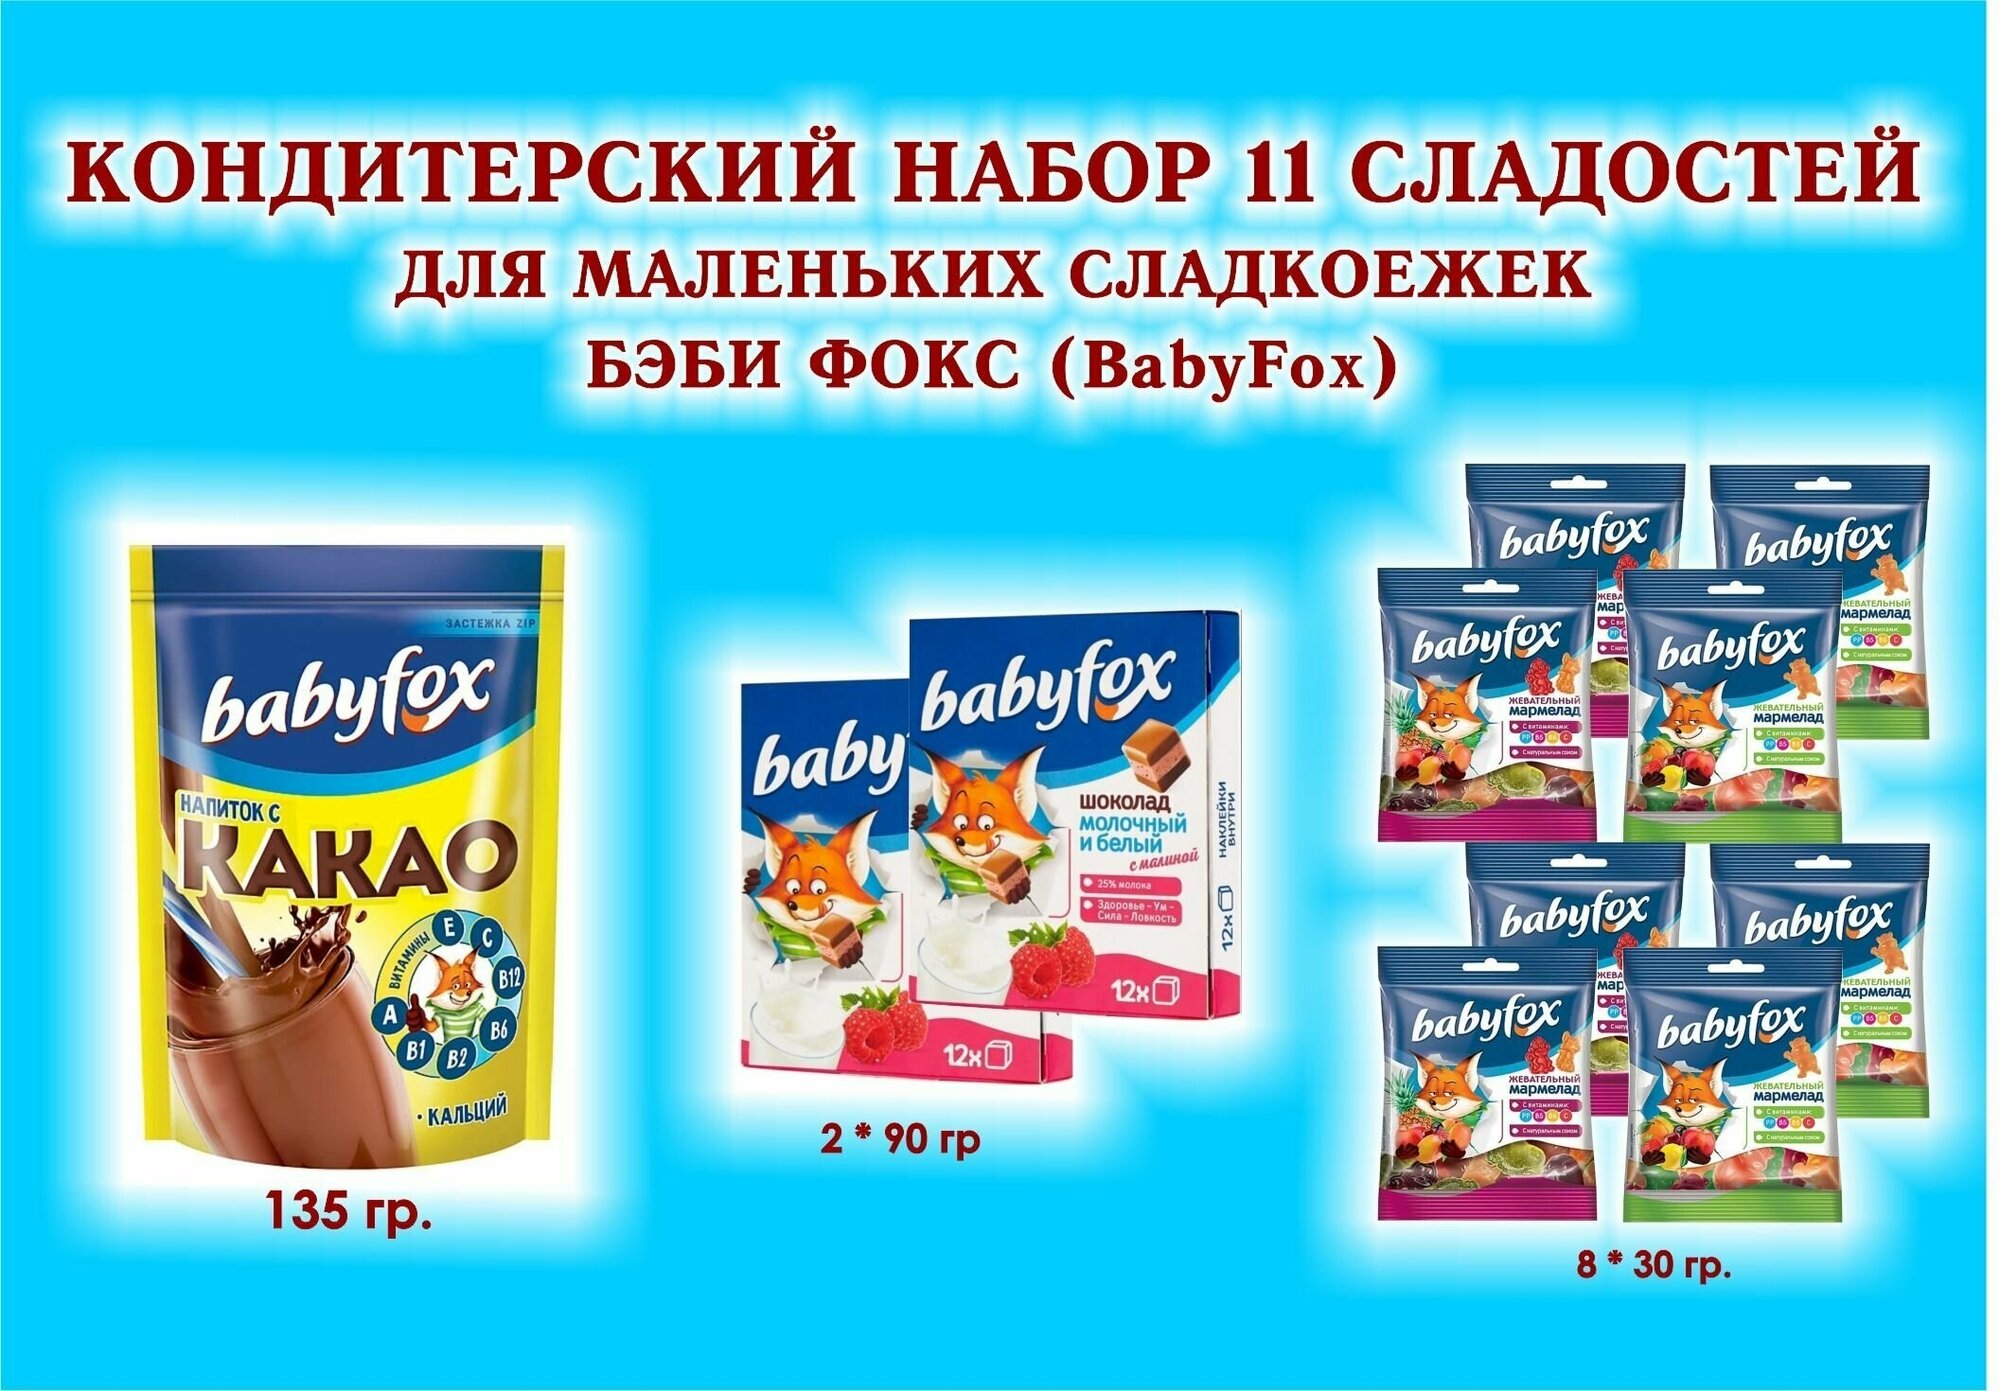 Набор сладостей "BabyFox"- Шоколад молочный с малиной 2*90 гр.+Мармелад жевательный 8*30 гр.+какао 1*135 гр.-подарок для маленьких сладкоежек.